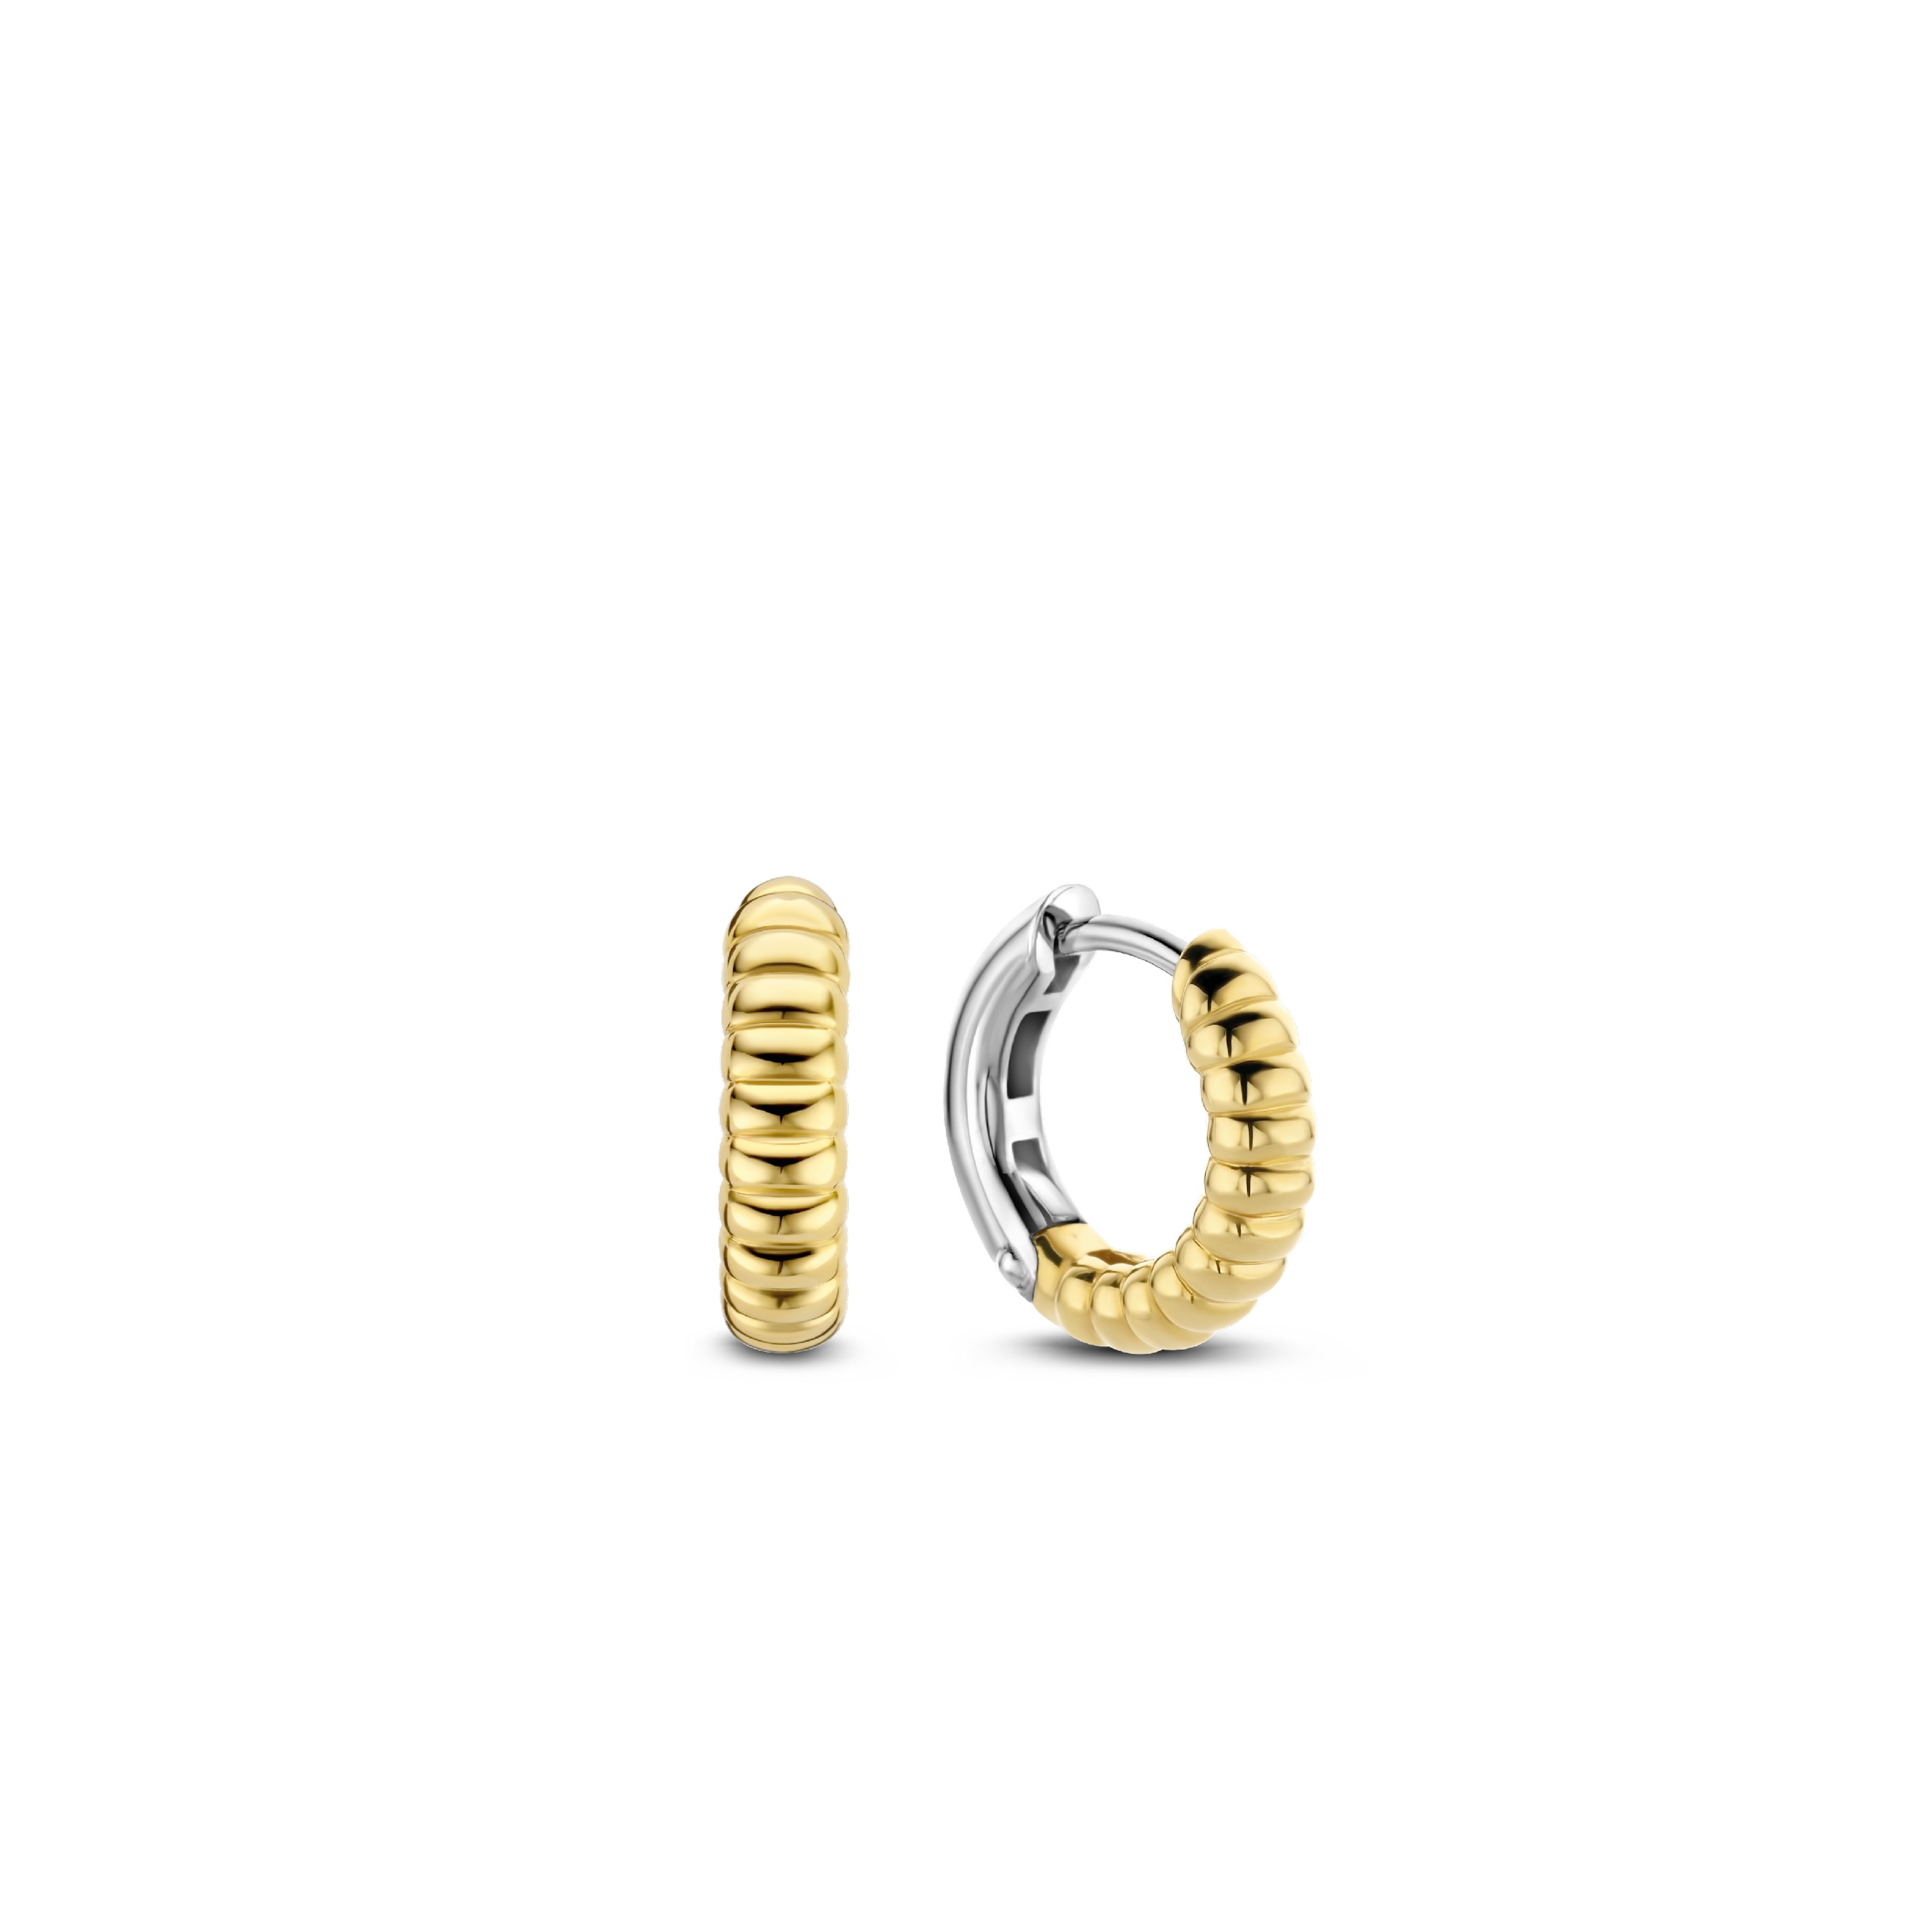 TI SENTO - Milano Earrings 7839SY Gala Jewelers Inc. White Oak, PA